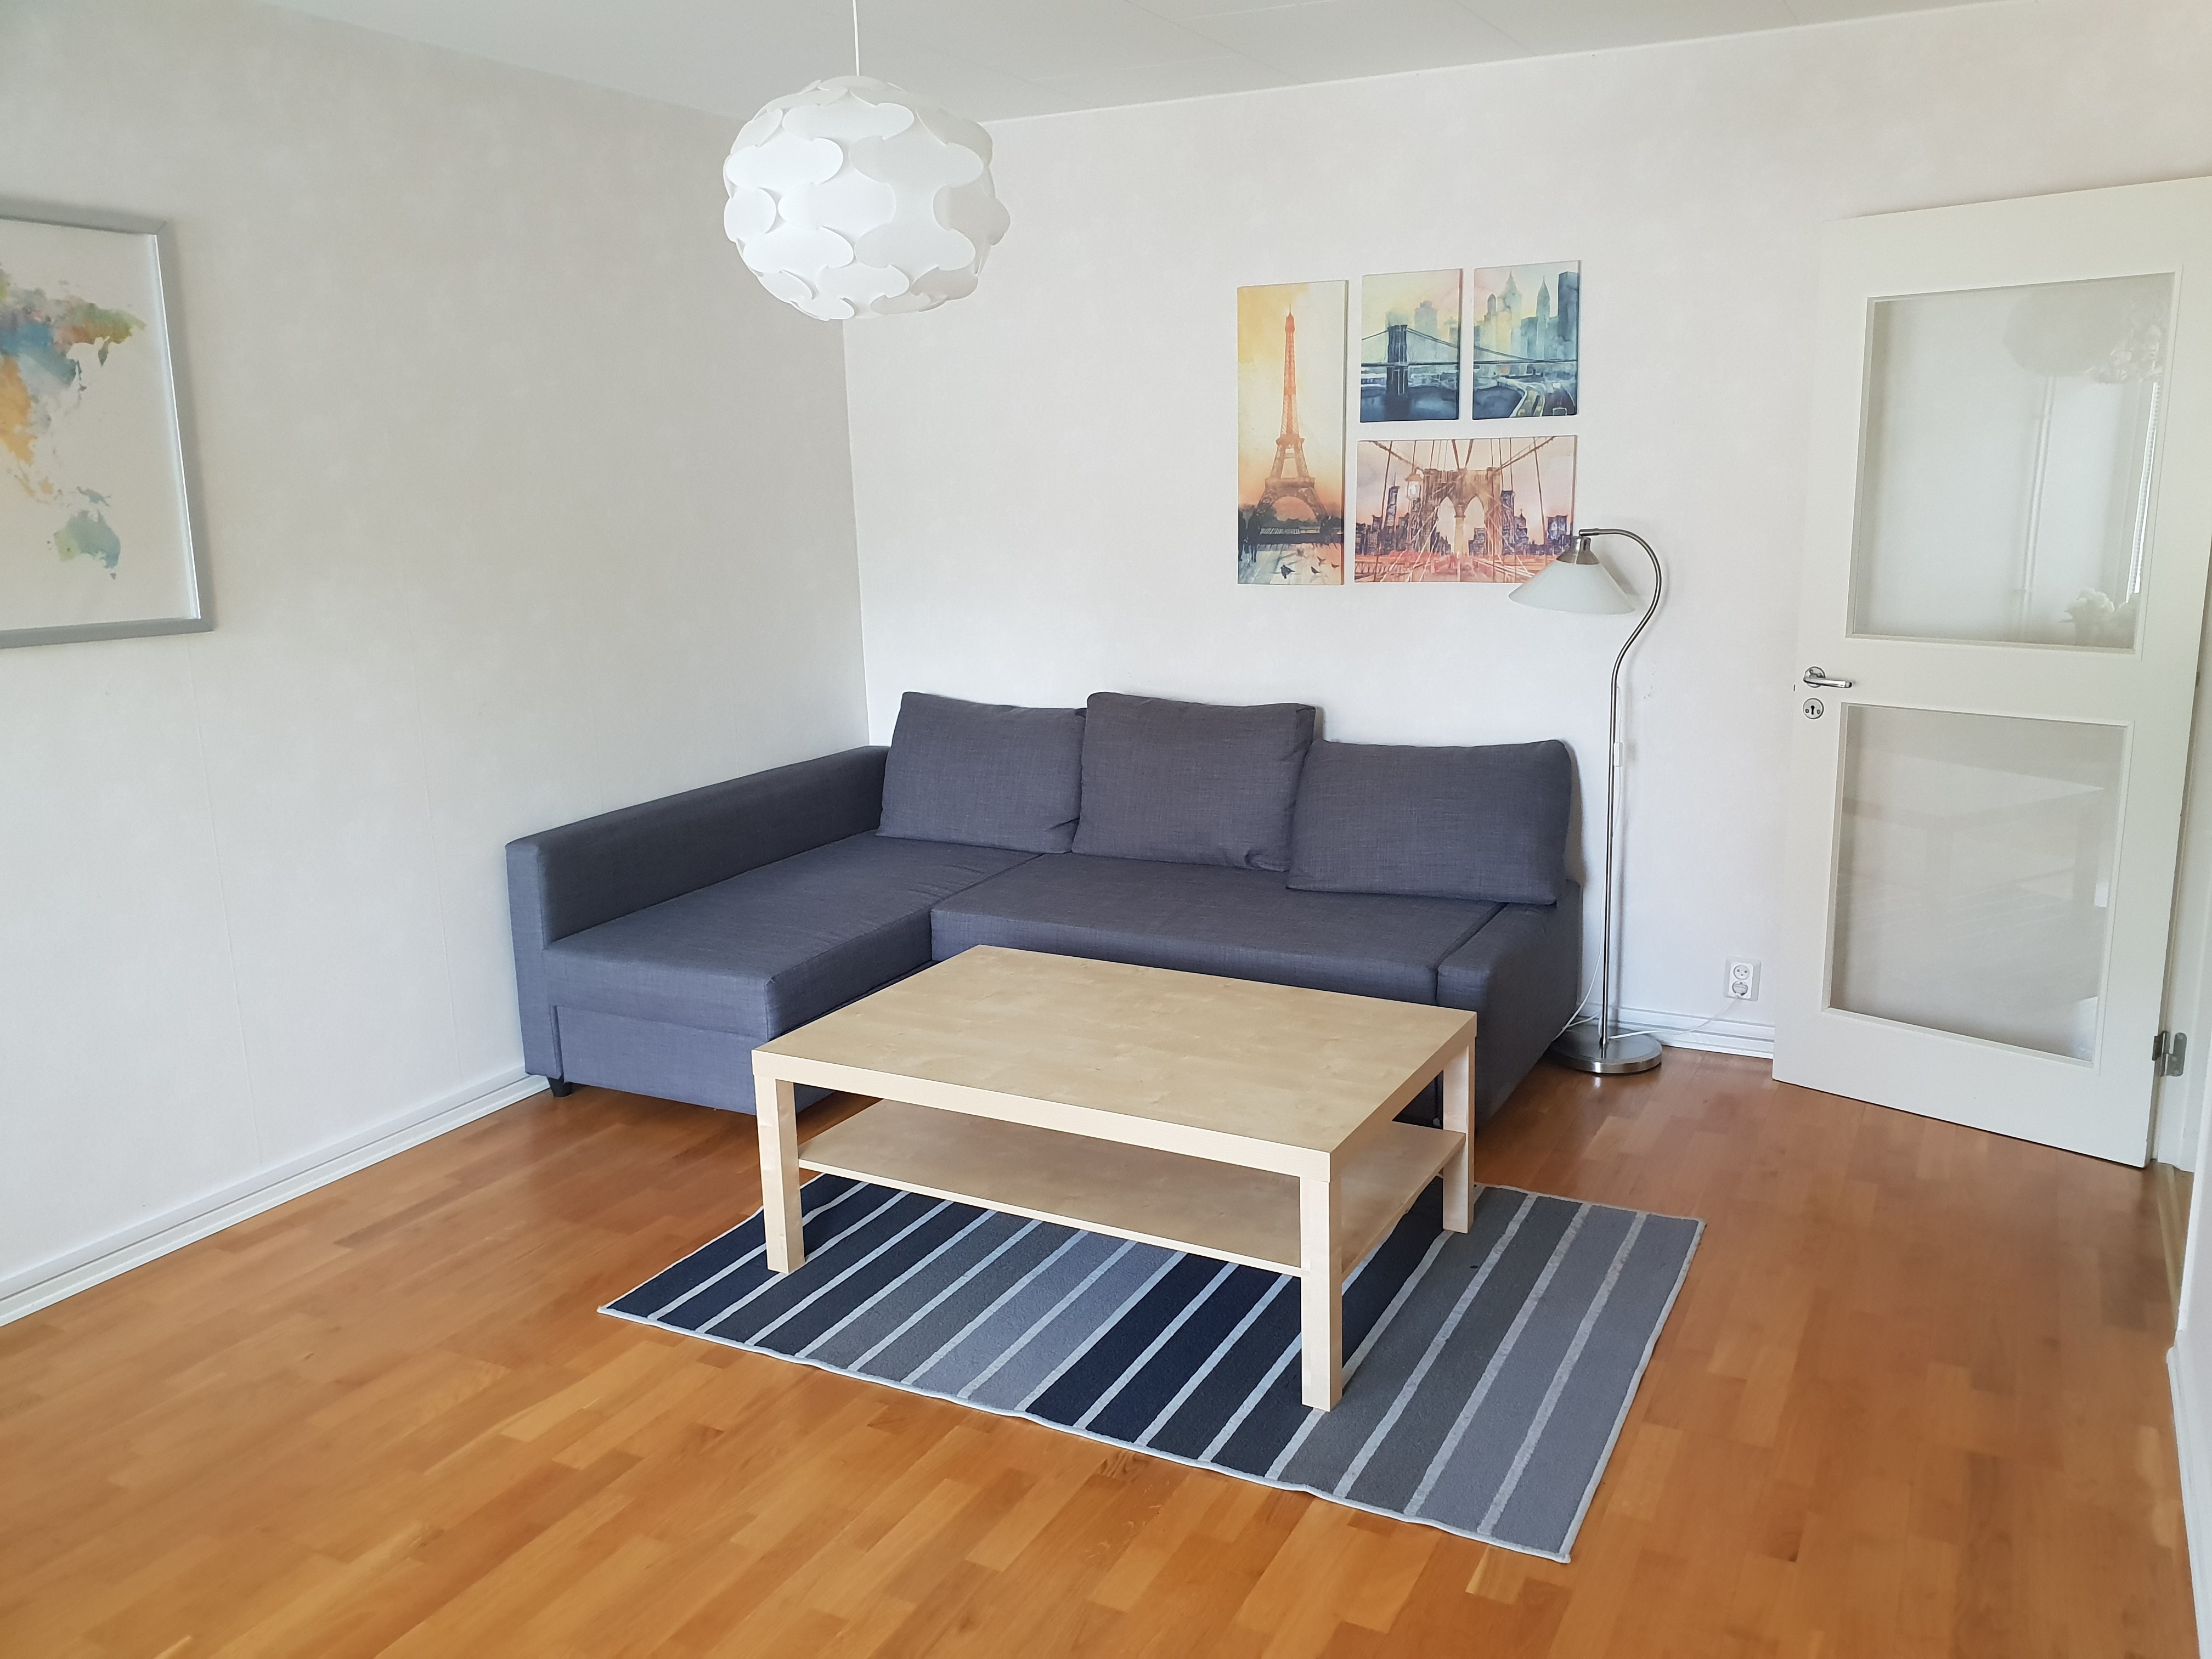 Bild på vardagsrum med soffa, soffbord och tavla på väggen